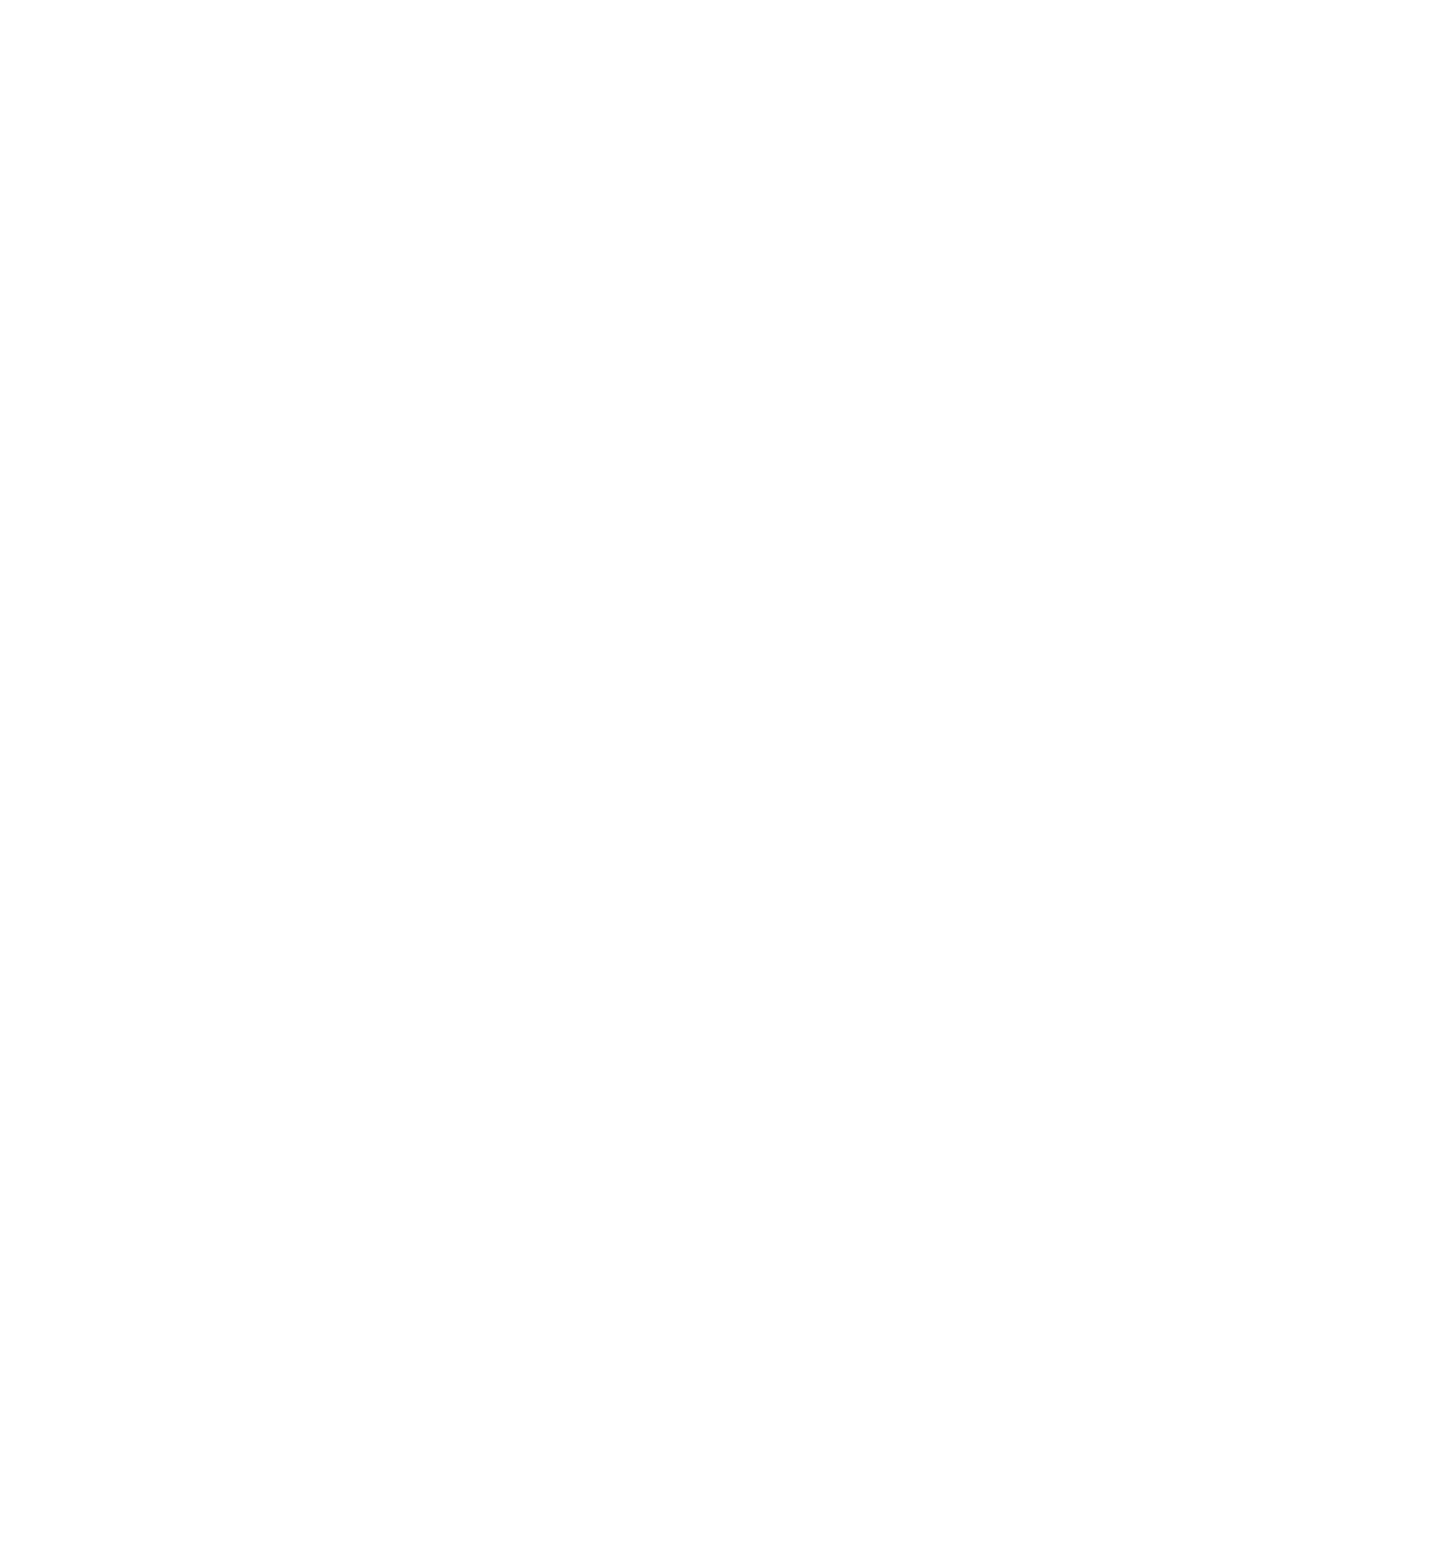 AIA logo pour fonds sombres (PNG transparent)